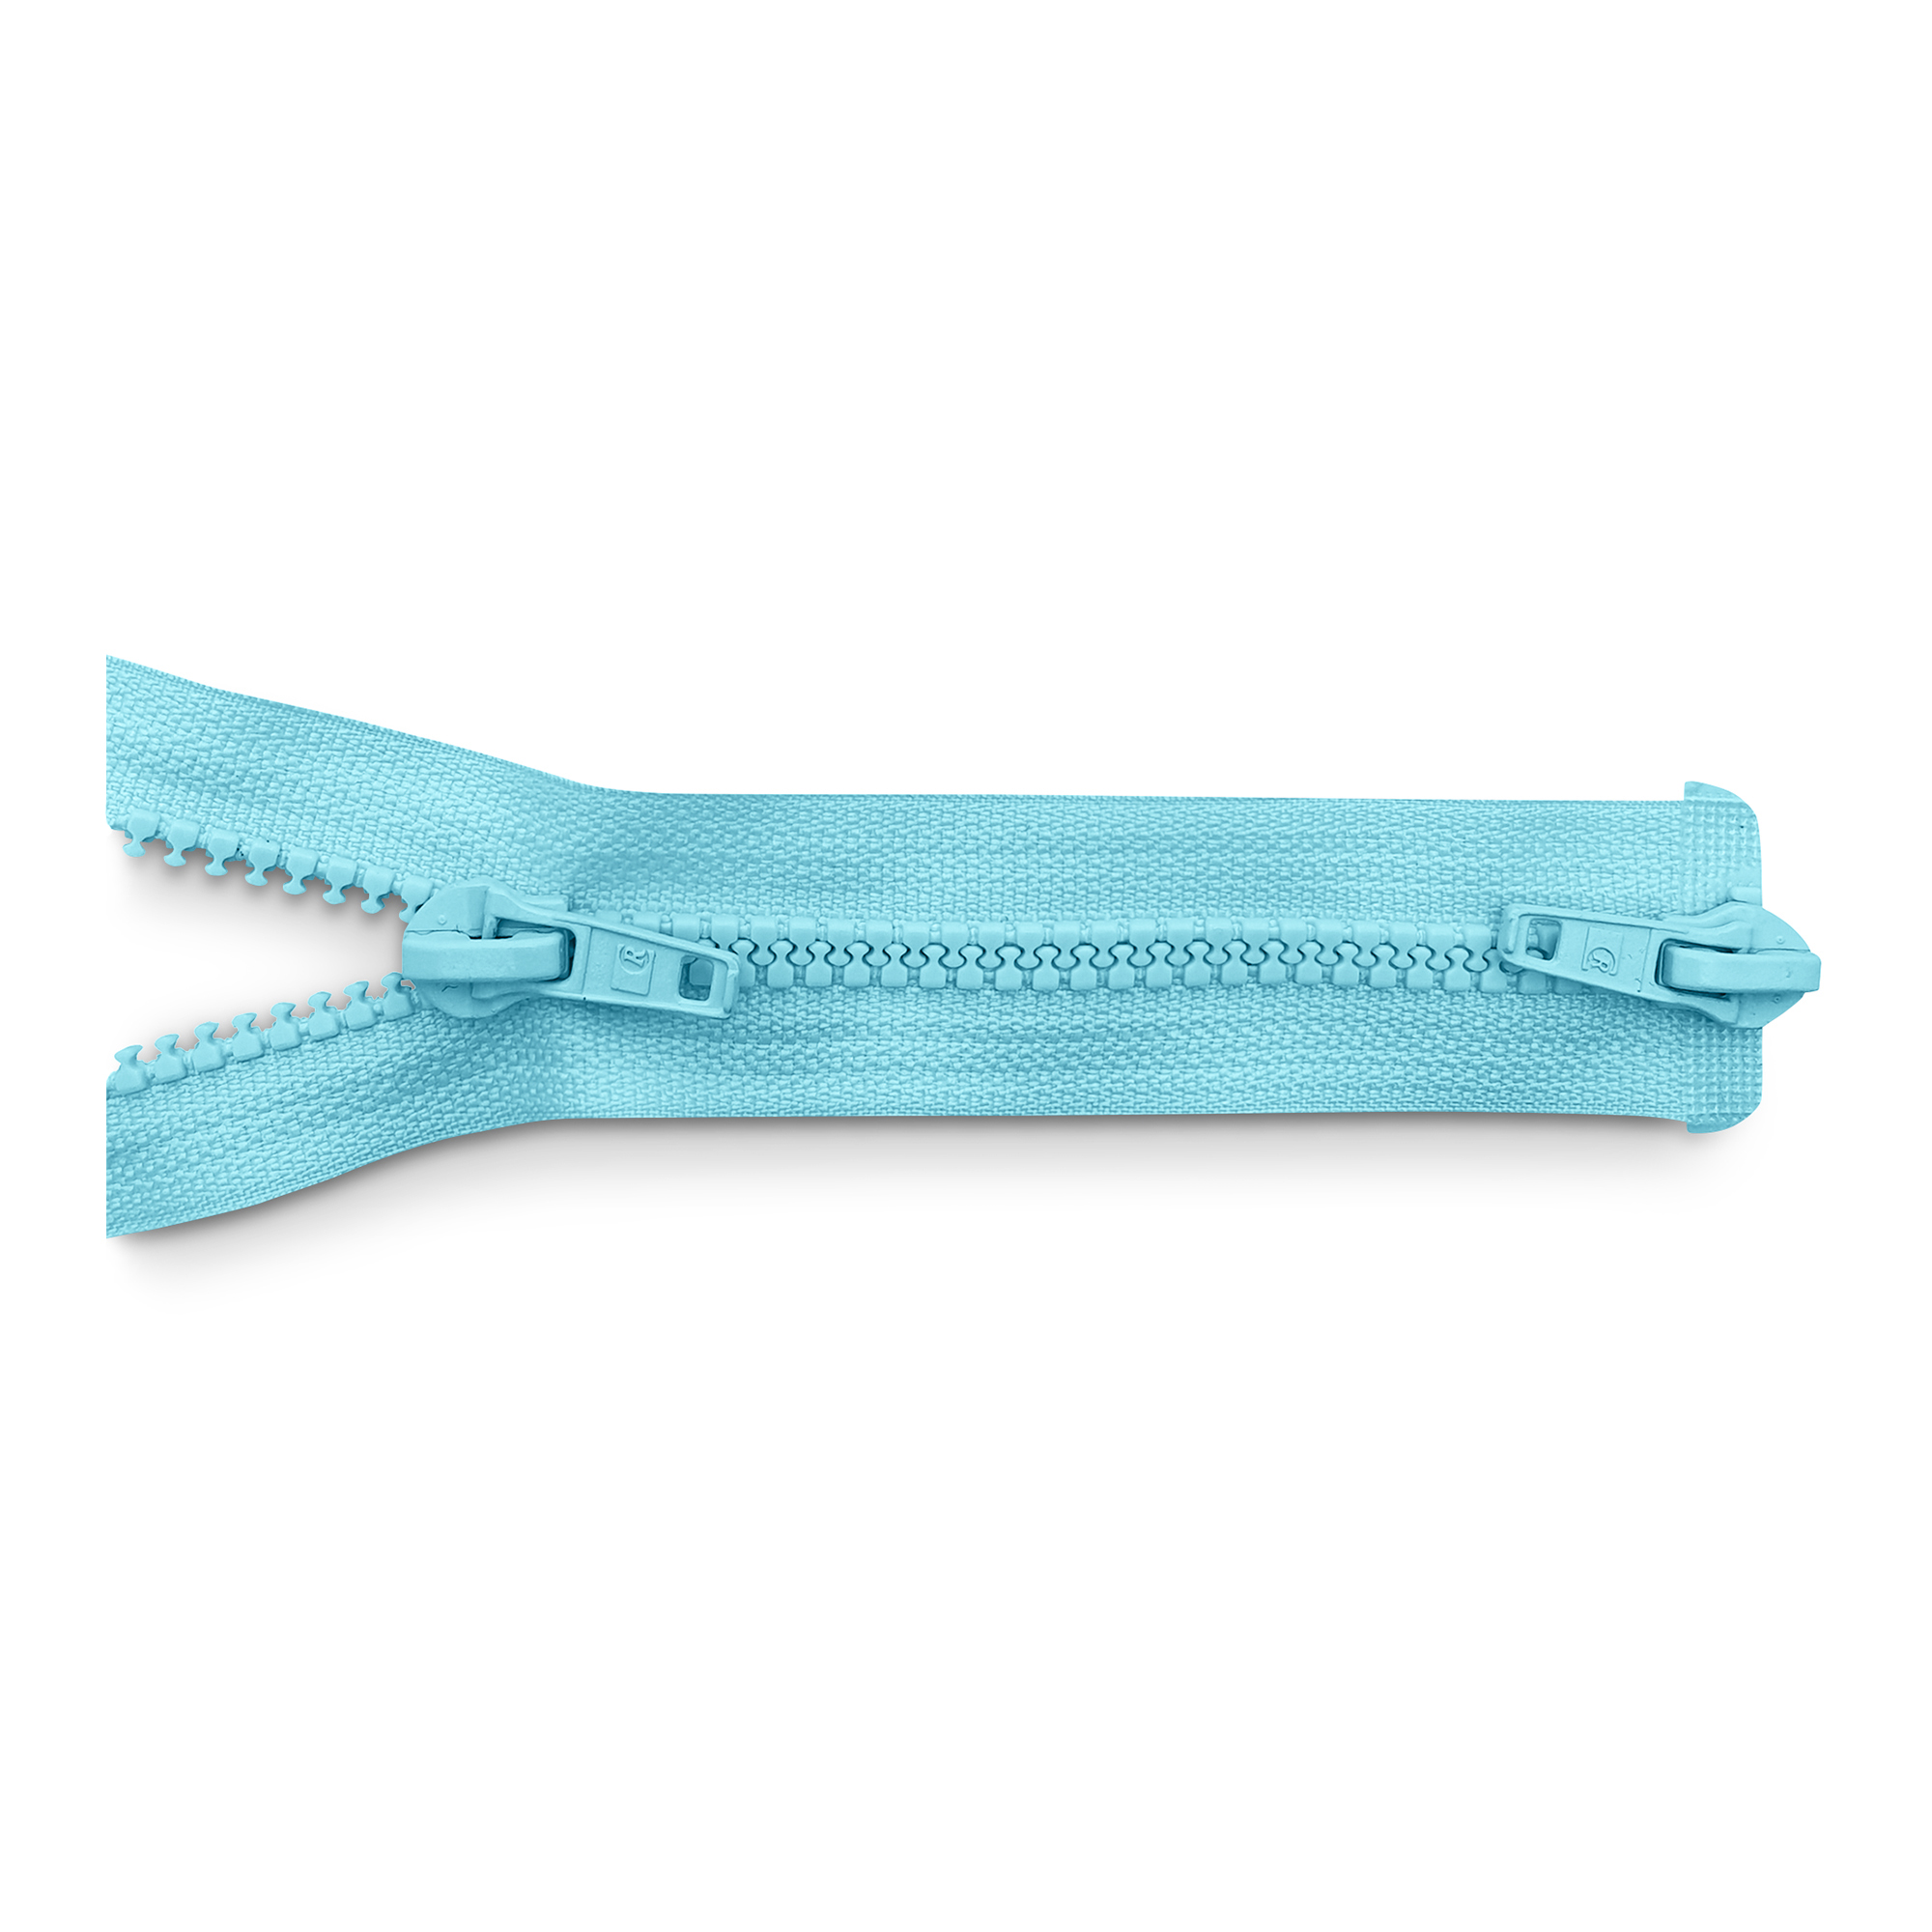 Reißverschluss 100cm, 2-Wege, K.stoff Zähne breit, turmalin/h.türkisblau, hochwertiger Marken-Reißverschluss von Rubi/Barcelona